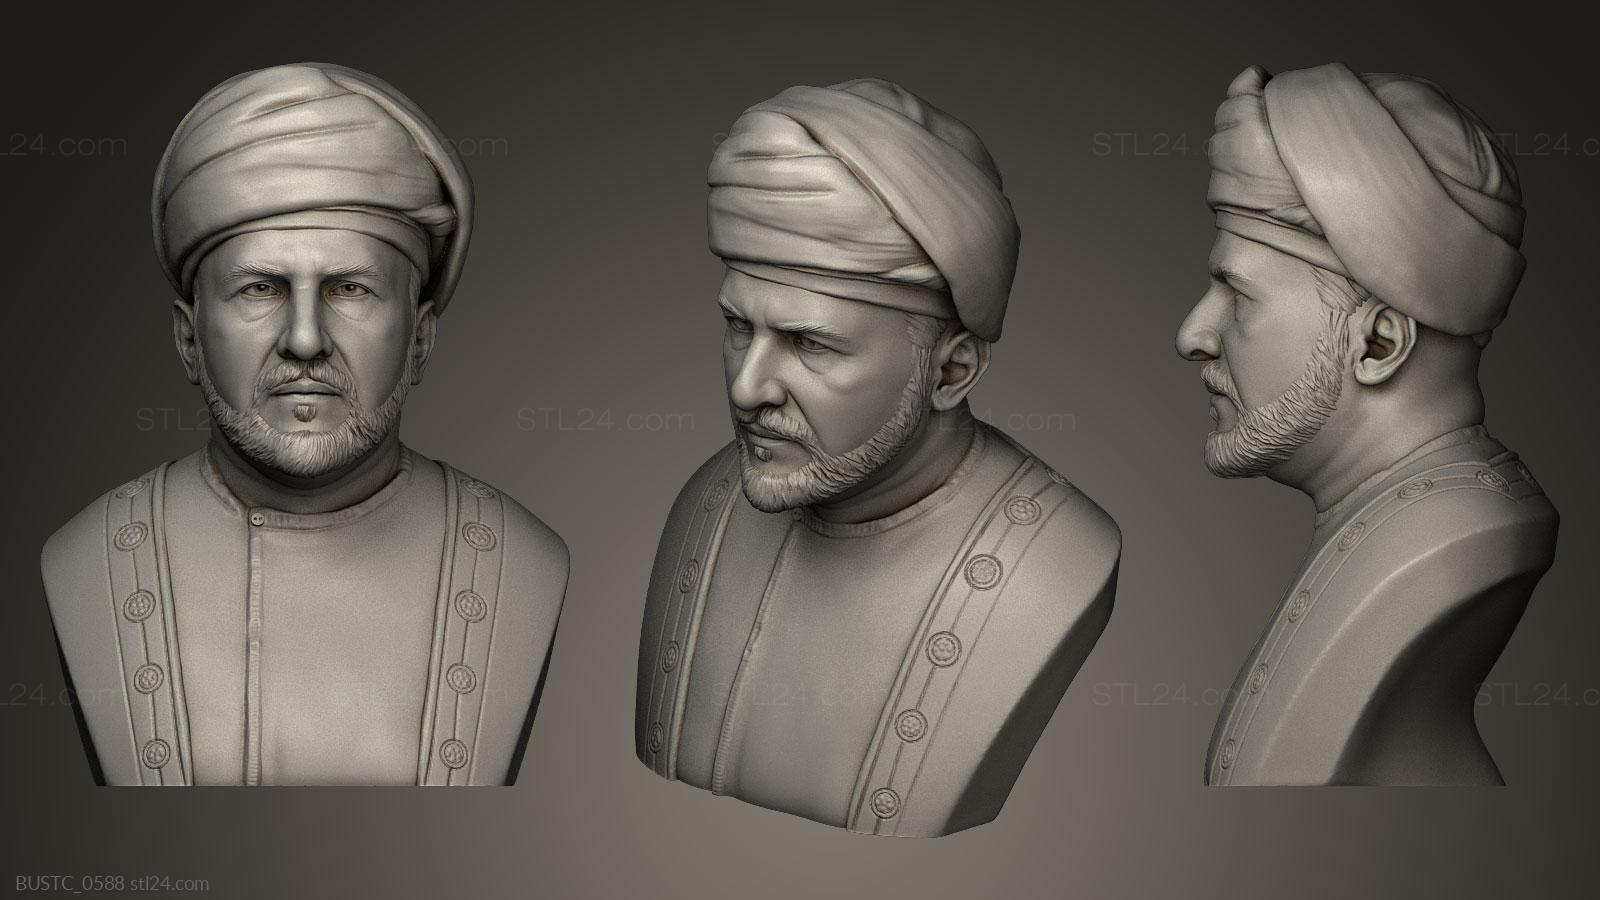 Бюсты и барельефы известных личностей (Султан Кабус, BUSTC_0588) 3D модель для ЧПУ станка